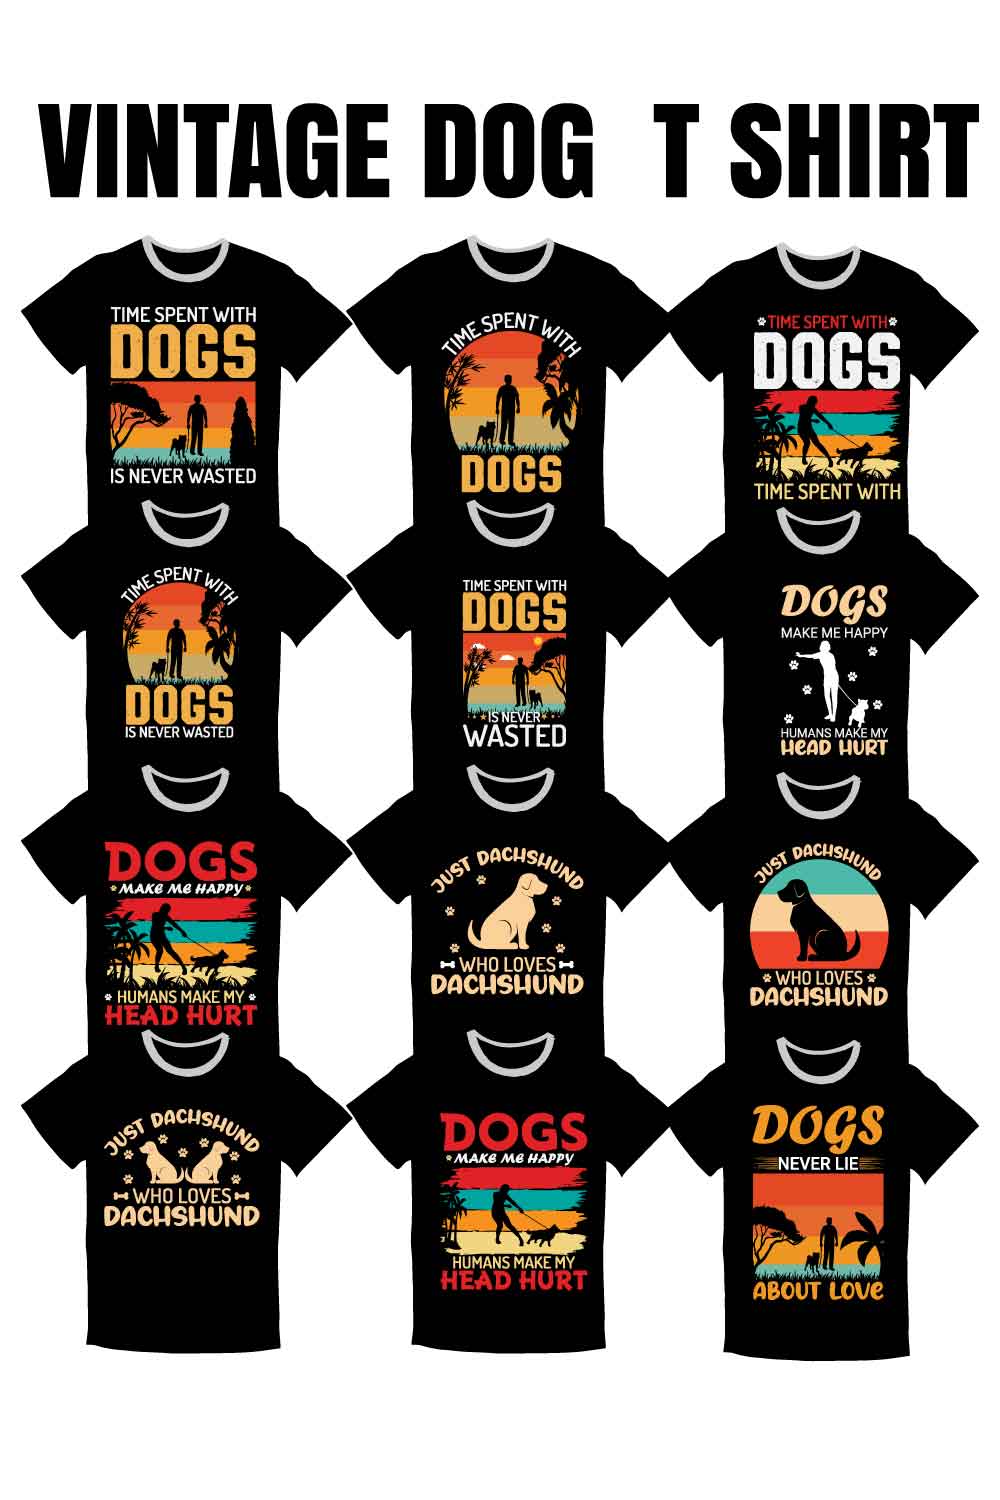 15 Dog Vintage T-shirt Bundle Pinterest image.